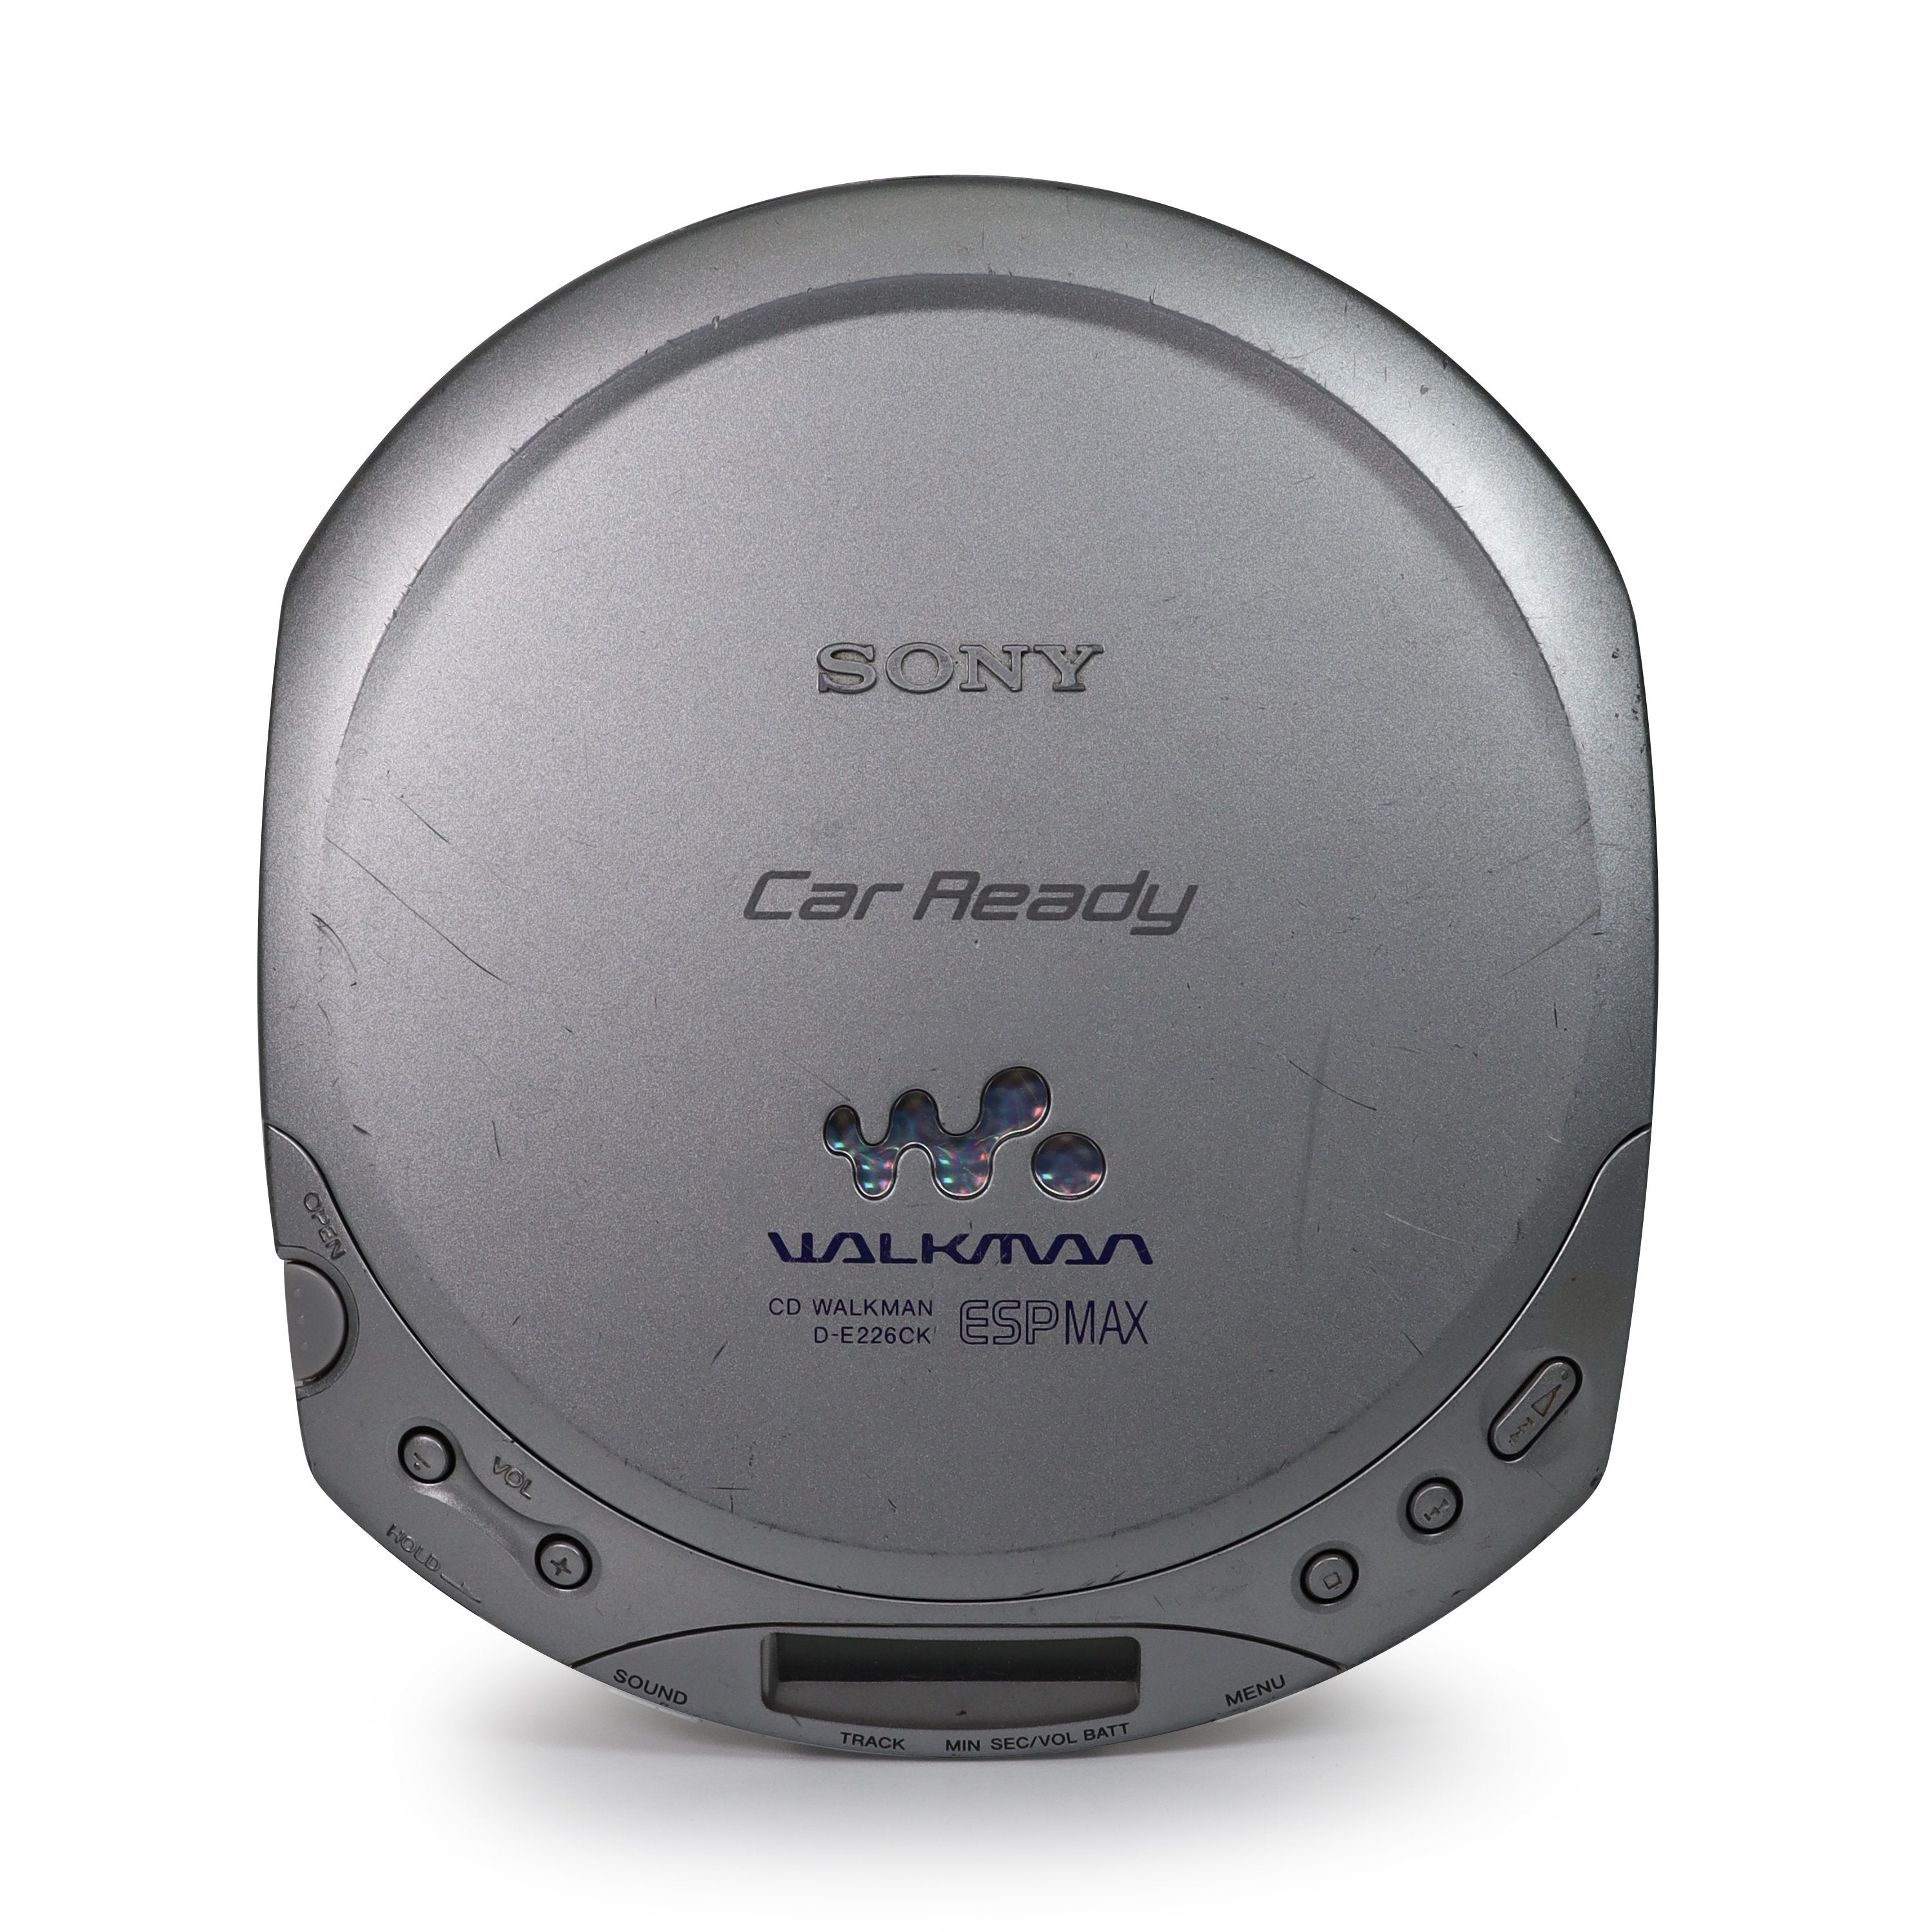 Sony DE226CK Walkman Reproductor de CD portátil